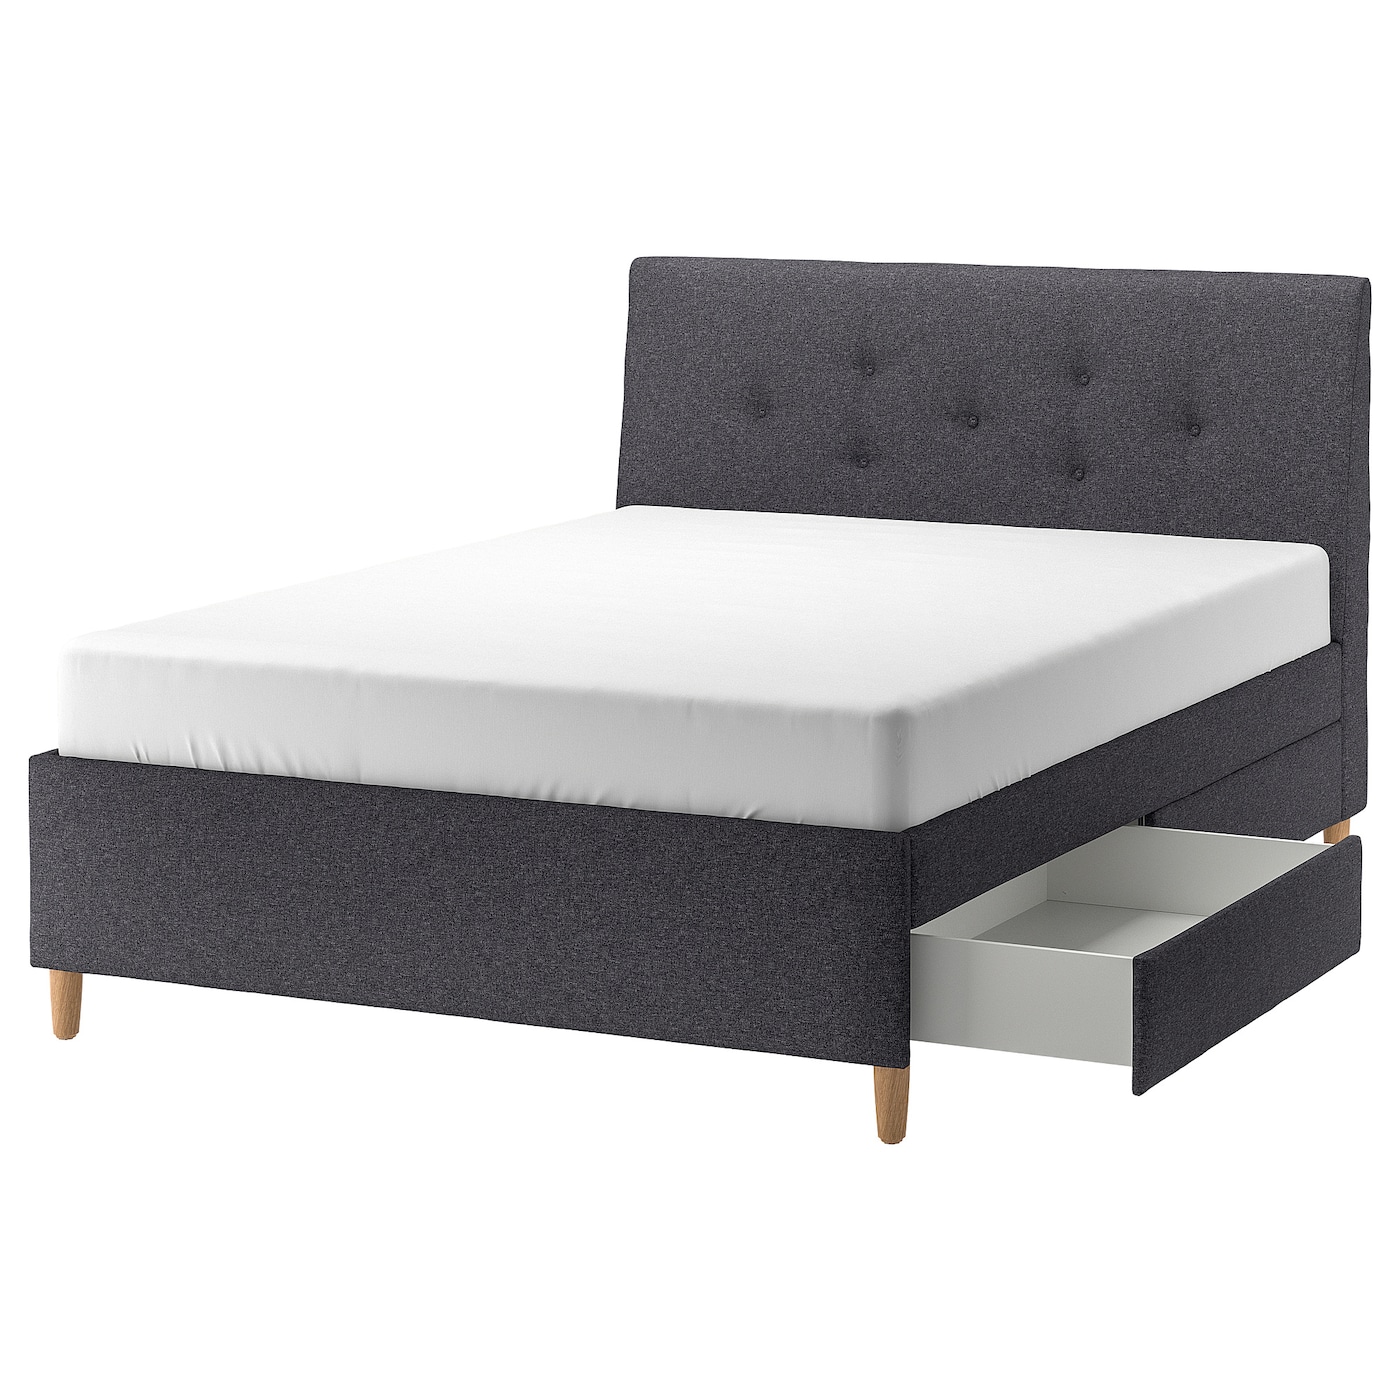 Кровать с мягкой обивкой и выдвижными ящиками - IKEA IDANÄS/IDANAS, 200х160 см, темно-серый, ИДАНЭС ИКЕА